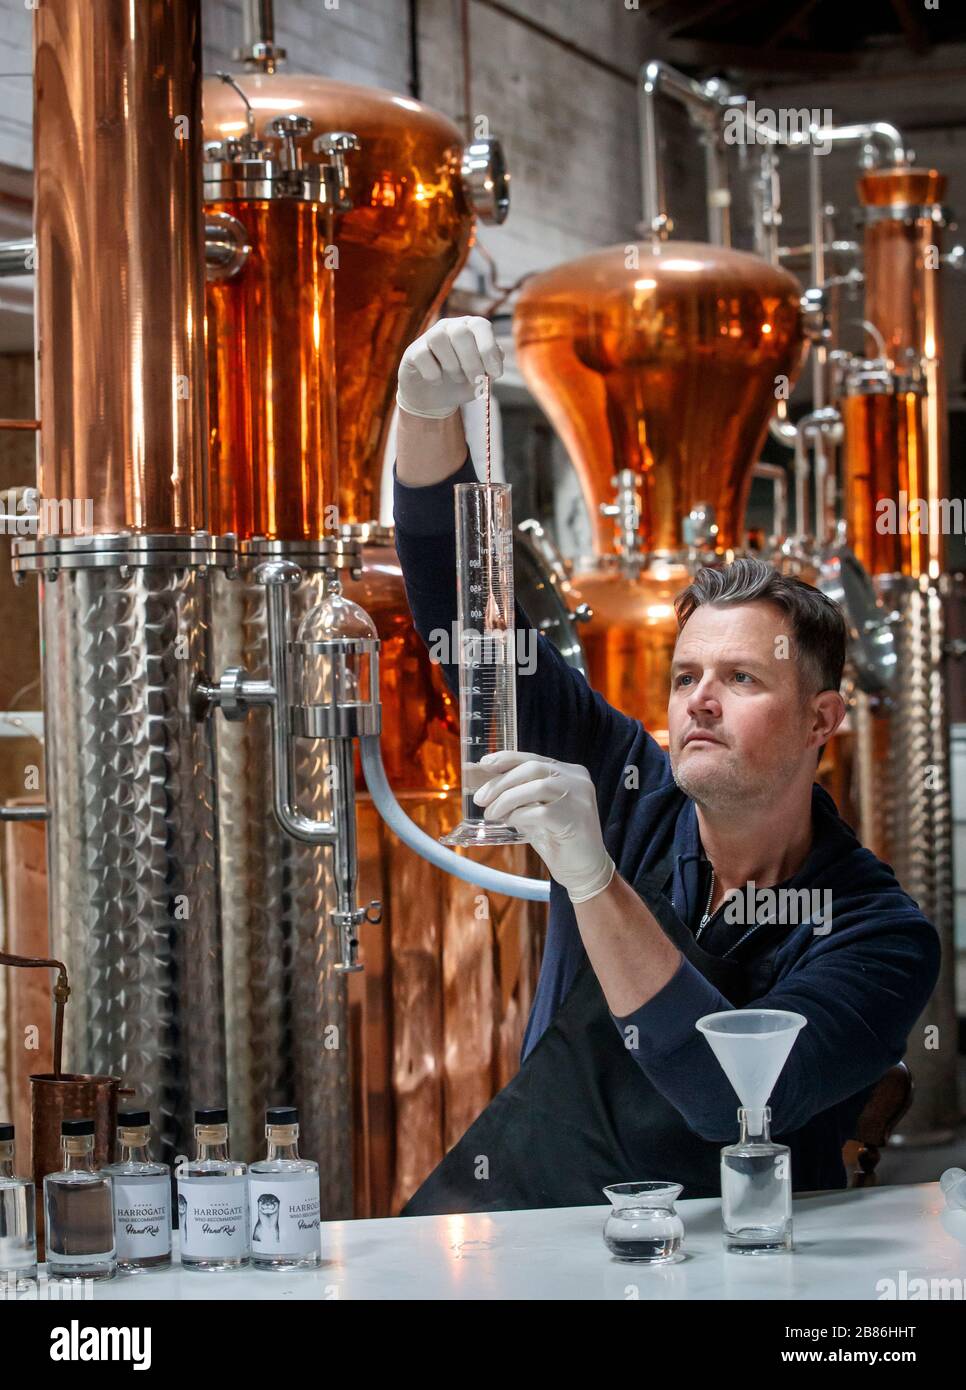 Steven Green, fondatore di Harrogate Tipple, produce un igienizzatore per le mani presso la sua distilleria di gin nel North Yorkshire, mentre la sua azienda inizia a produrre un igienizzatore in linea con le raccomandazioni dell'Organizzazione Mondiale della Sanità per incrementare l'approvvigionamento in occasione della crisi del coronavirus. Foto Stock